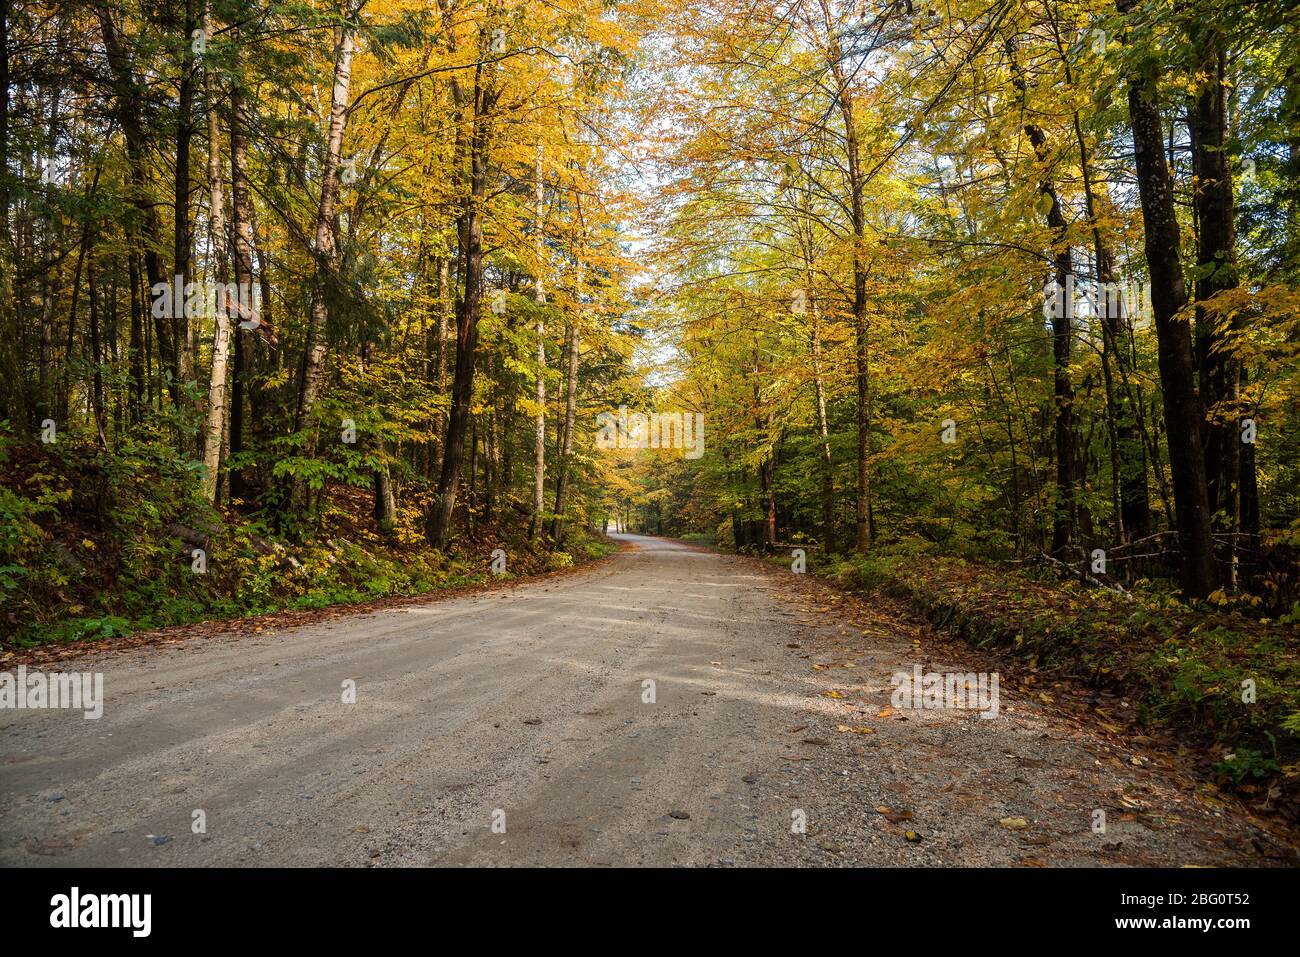 Schöne kurvenreiche unbefestigte Straße durch einen Wald an einem Herbstmorgen. Atemberaubende Herbstfarben. Stockfoto